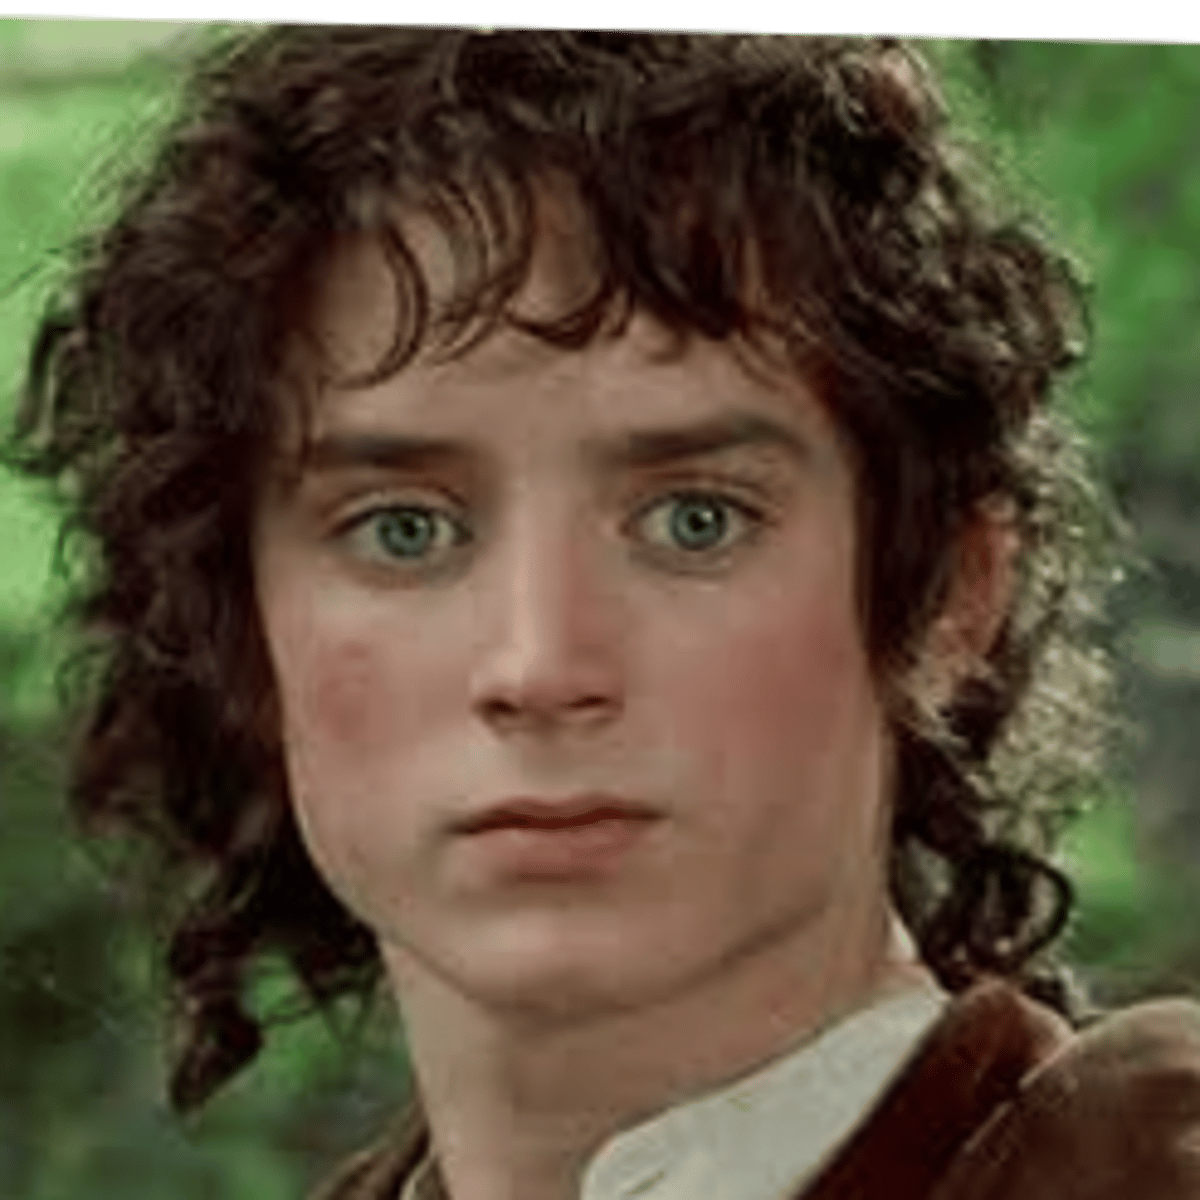 Frodo Baggins